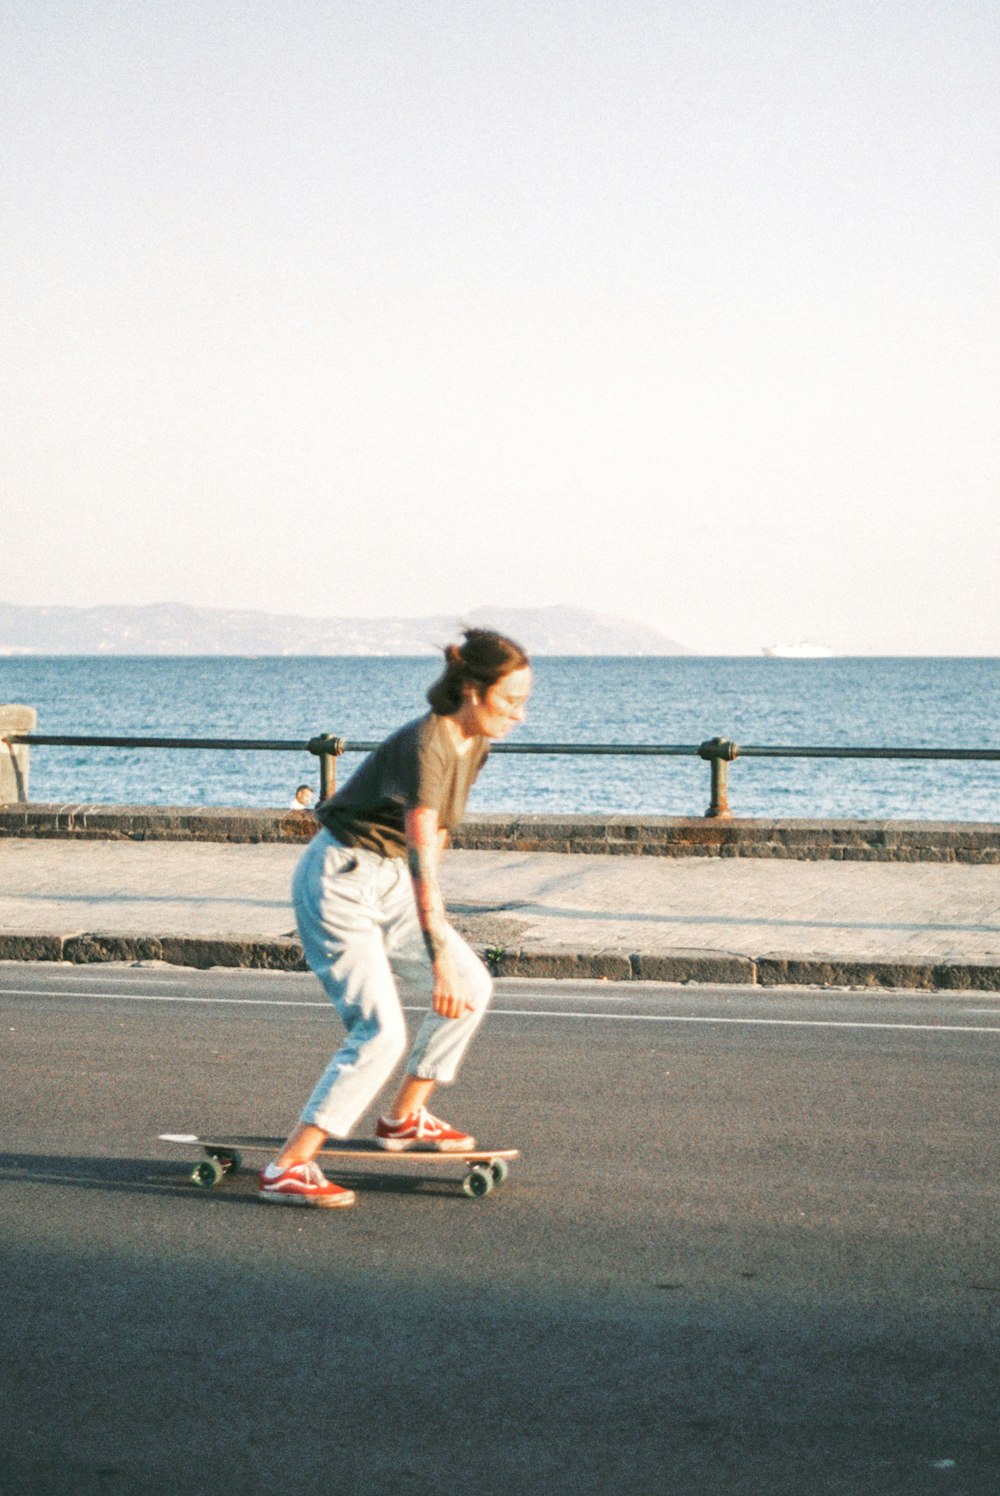 Une femme faisant du skateboard dans une rue au bord de l’océan